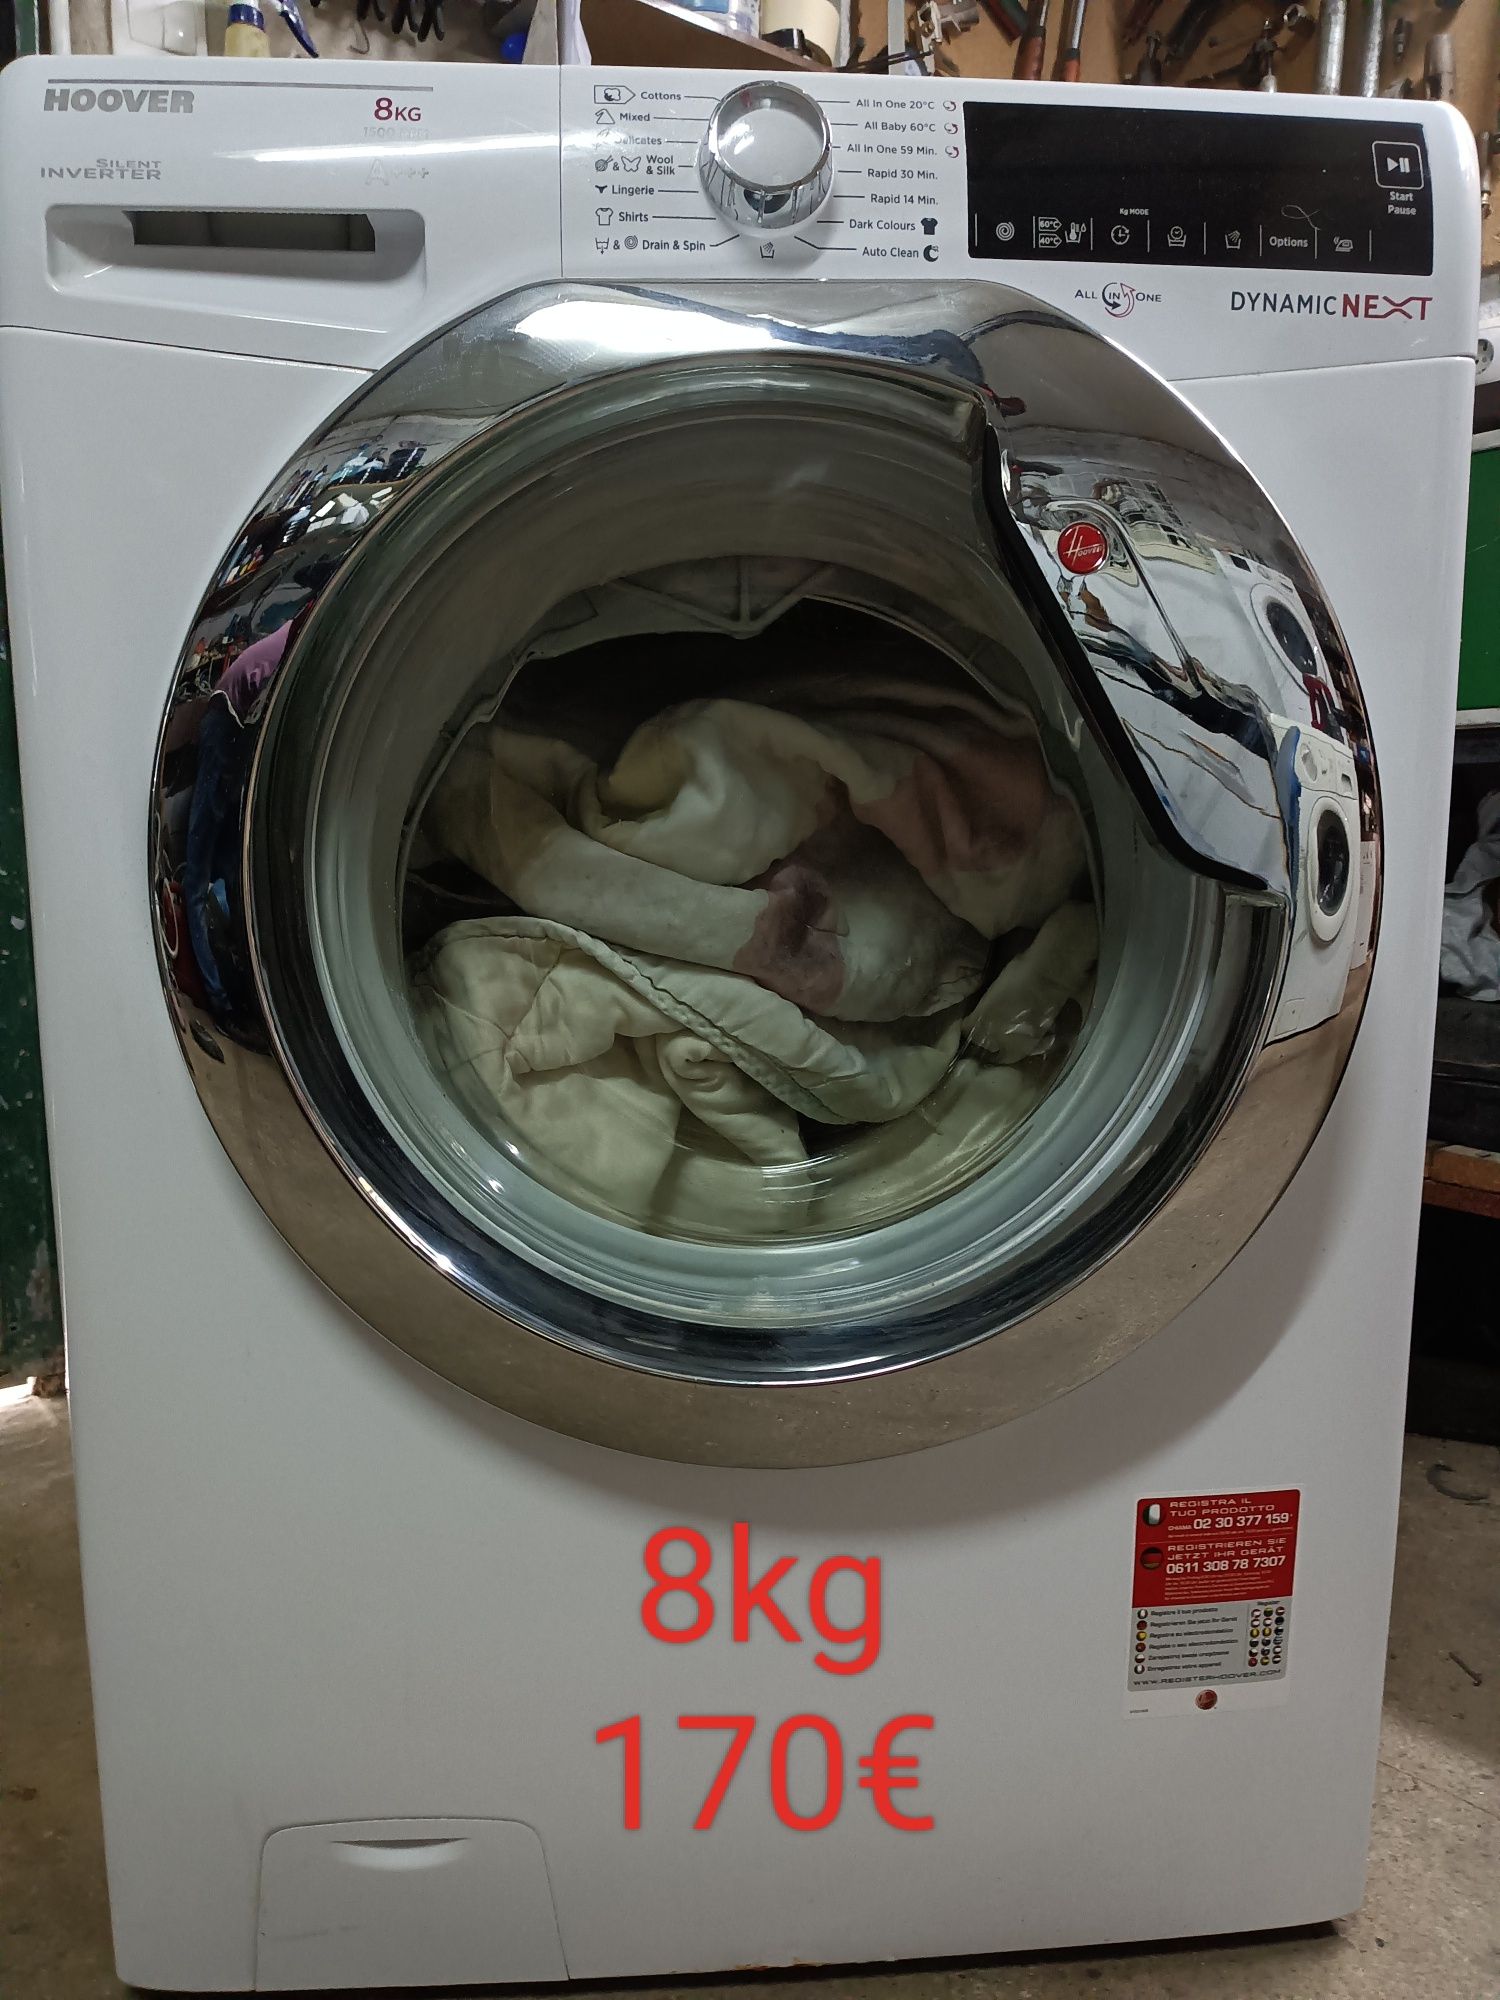 Várias máquinas de lavar roupa